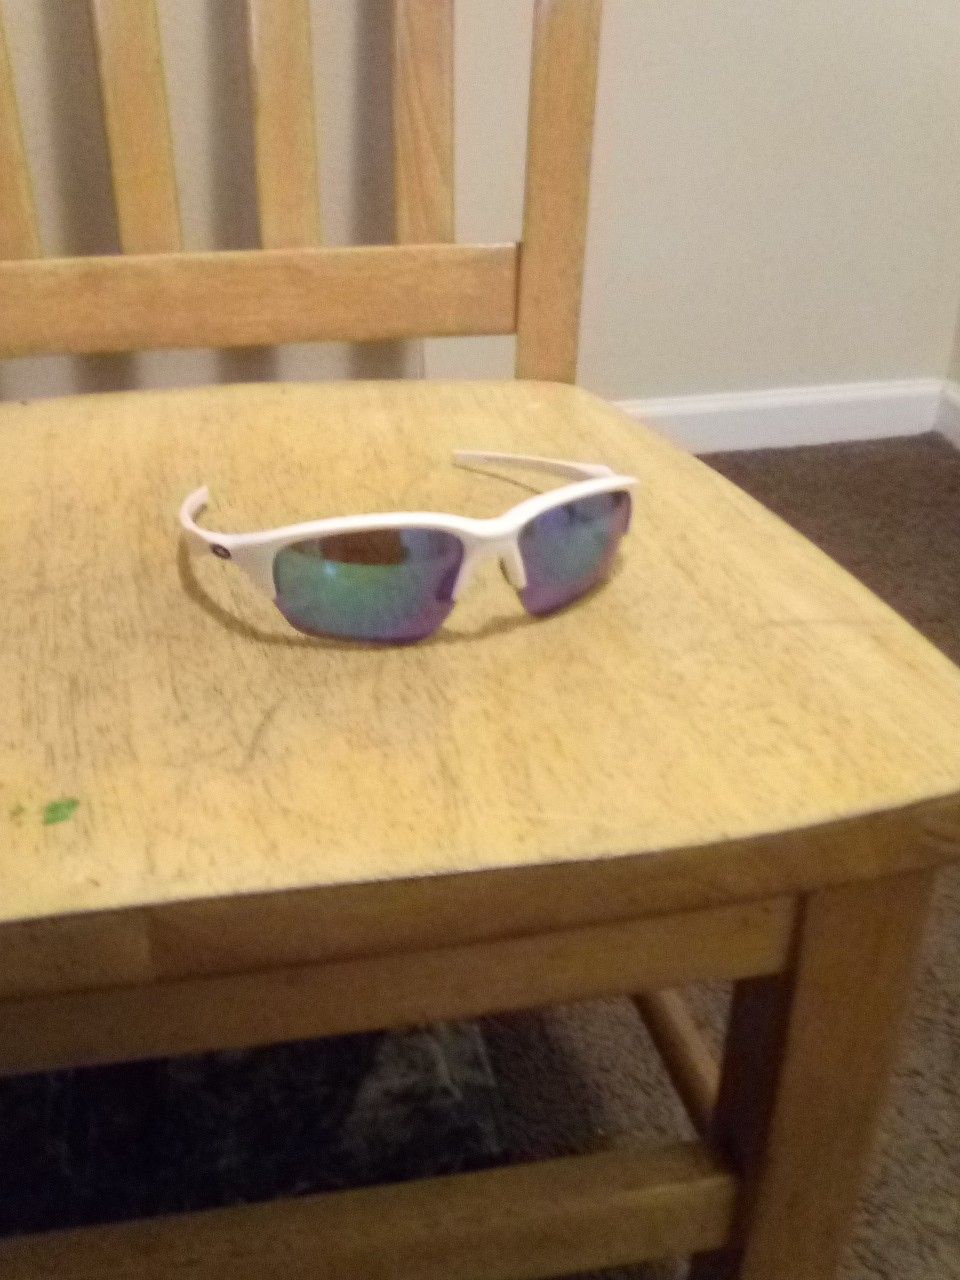 Oakley's sun glasses